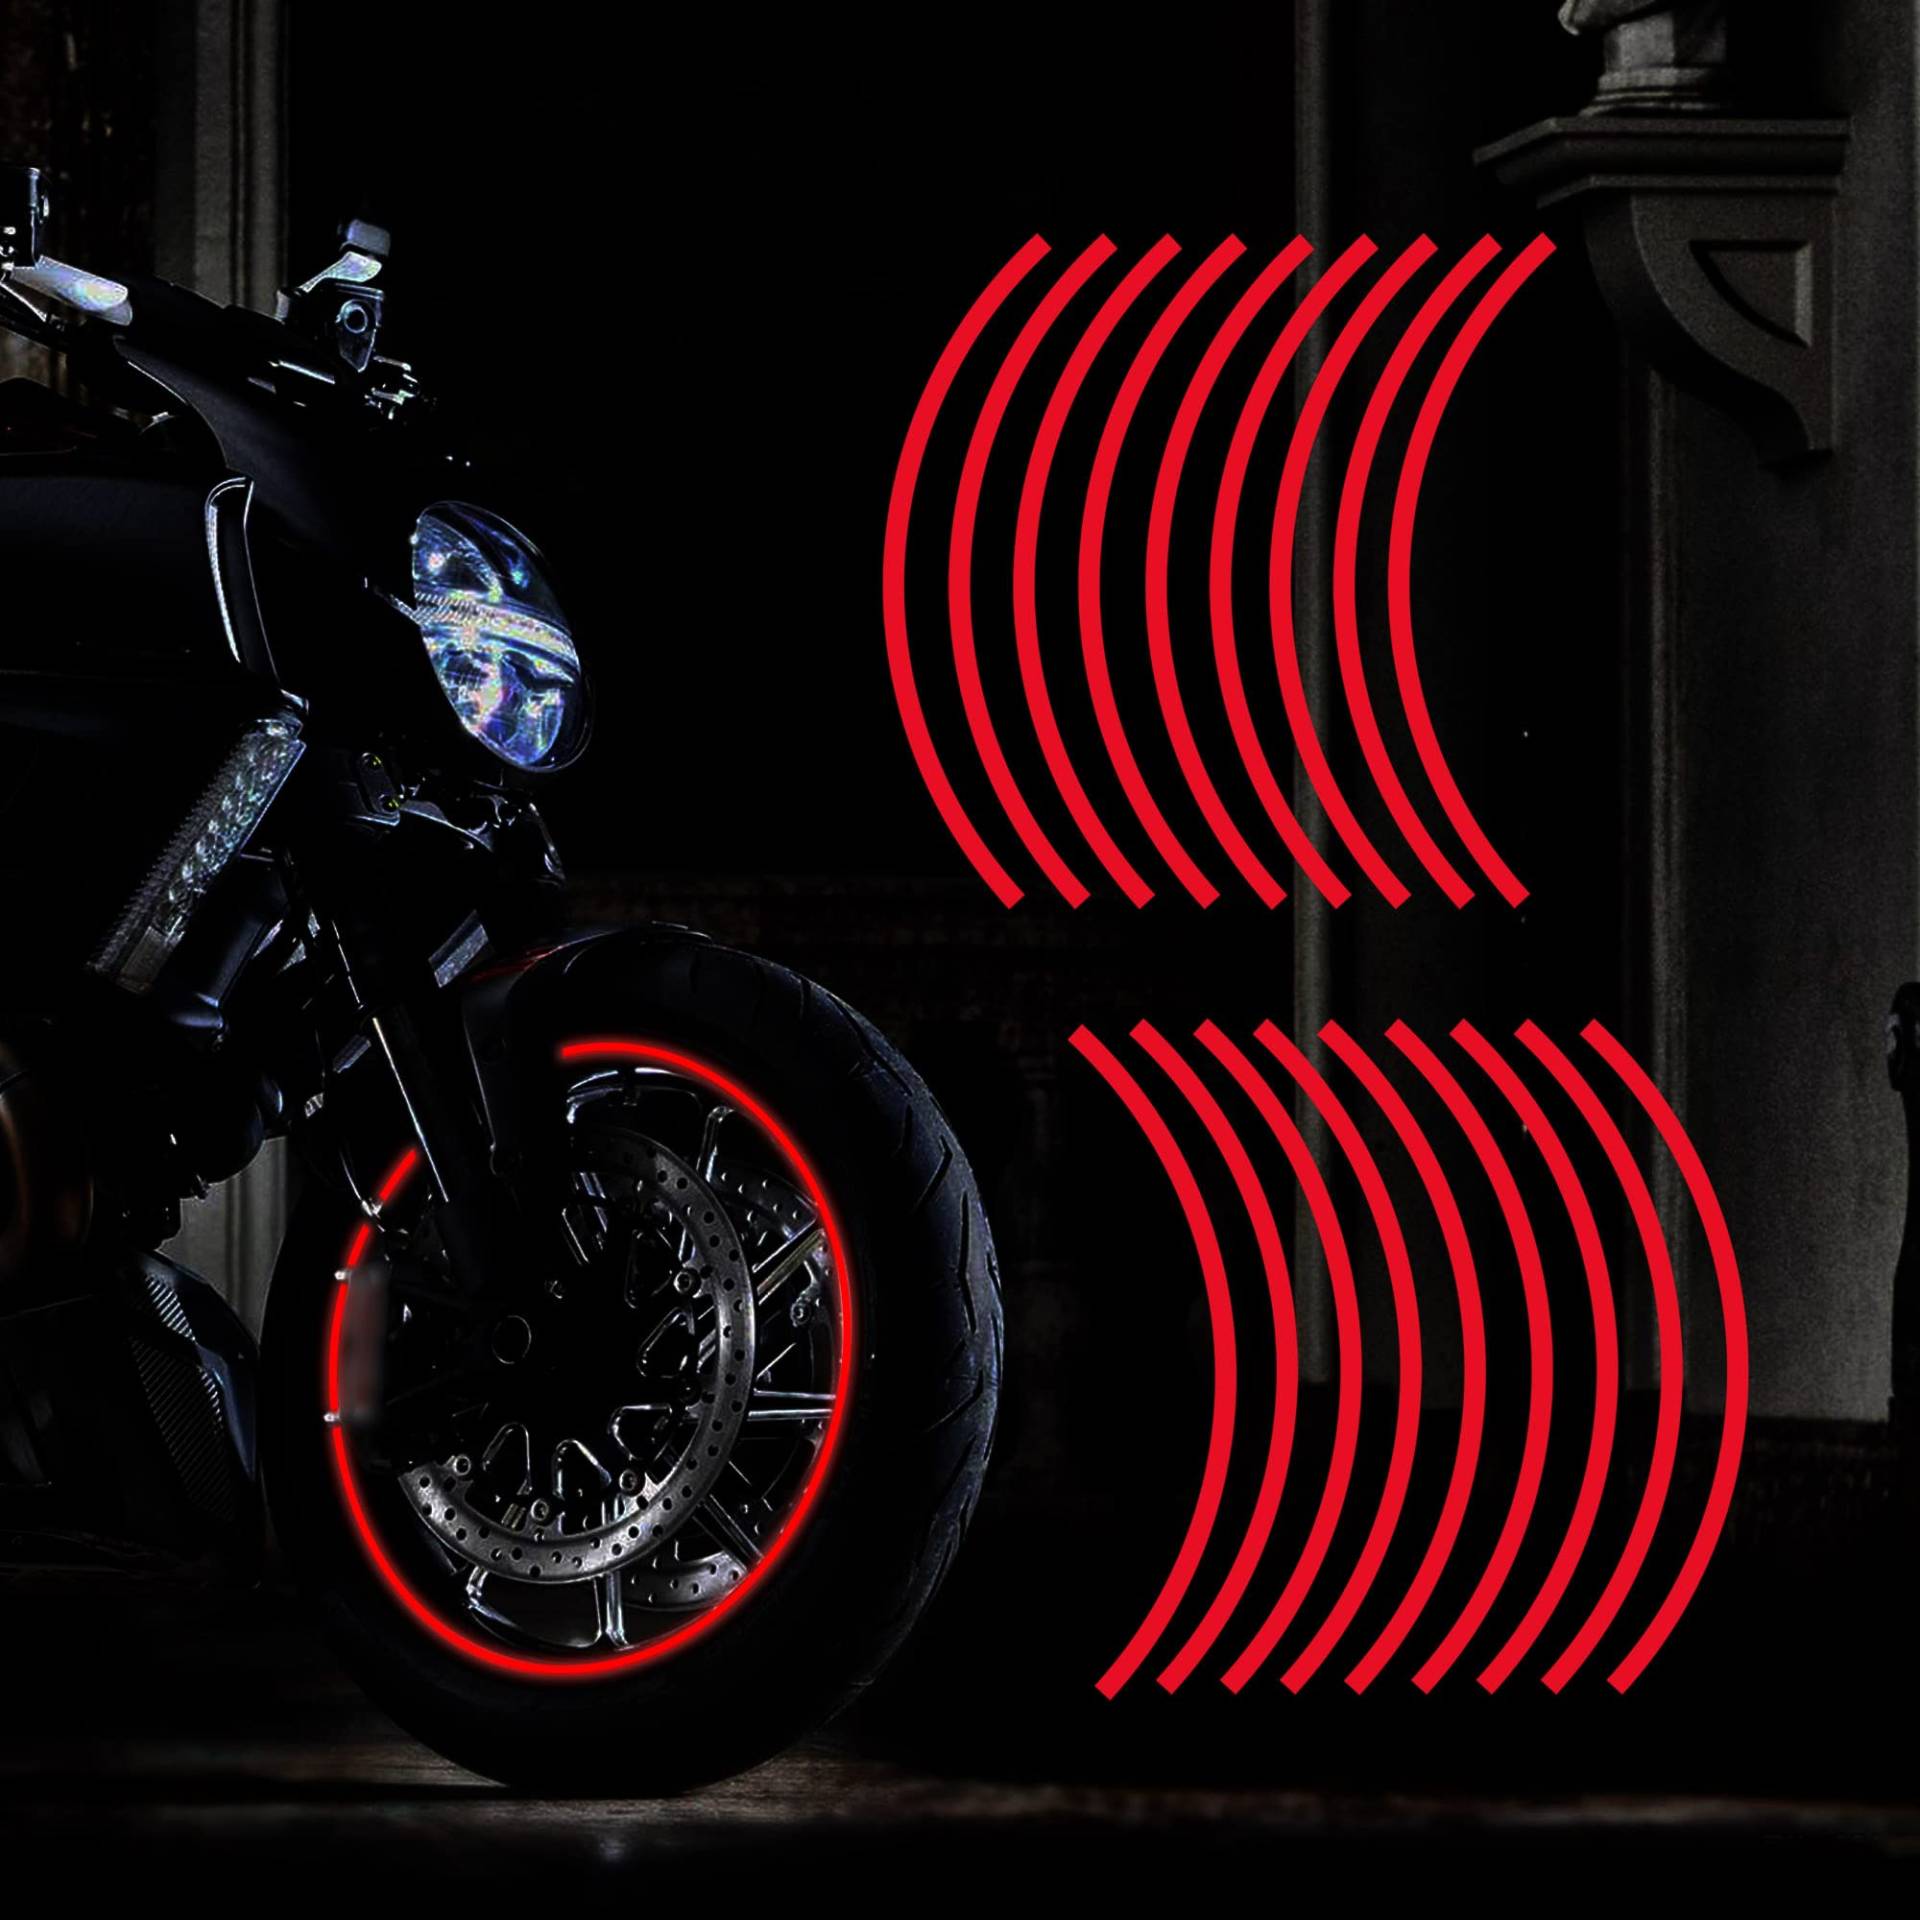 TOMALL 18pcs verlängern 43cm reflektierende Rad Felgenstreifen Aufkleber für Motorradräder Auto Radfahren Fahrrad Fahrrad Nacht reflektierende Sicherheit Dekoration Streifen Universal (Rot) von TOMALL